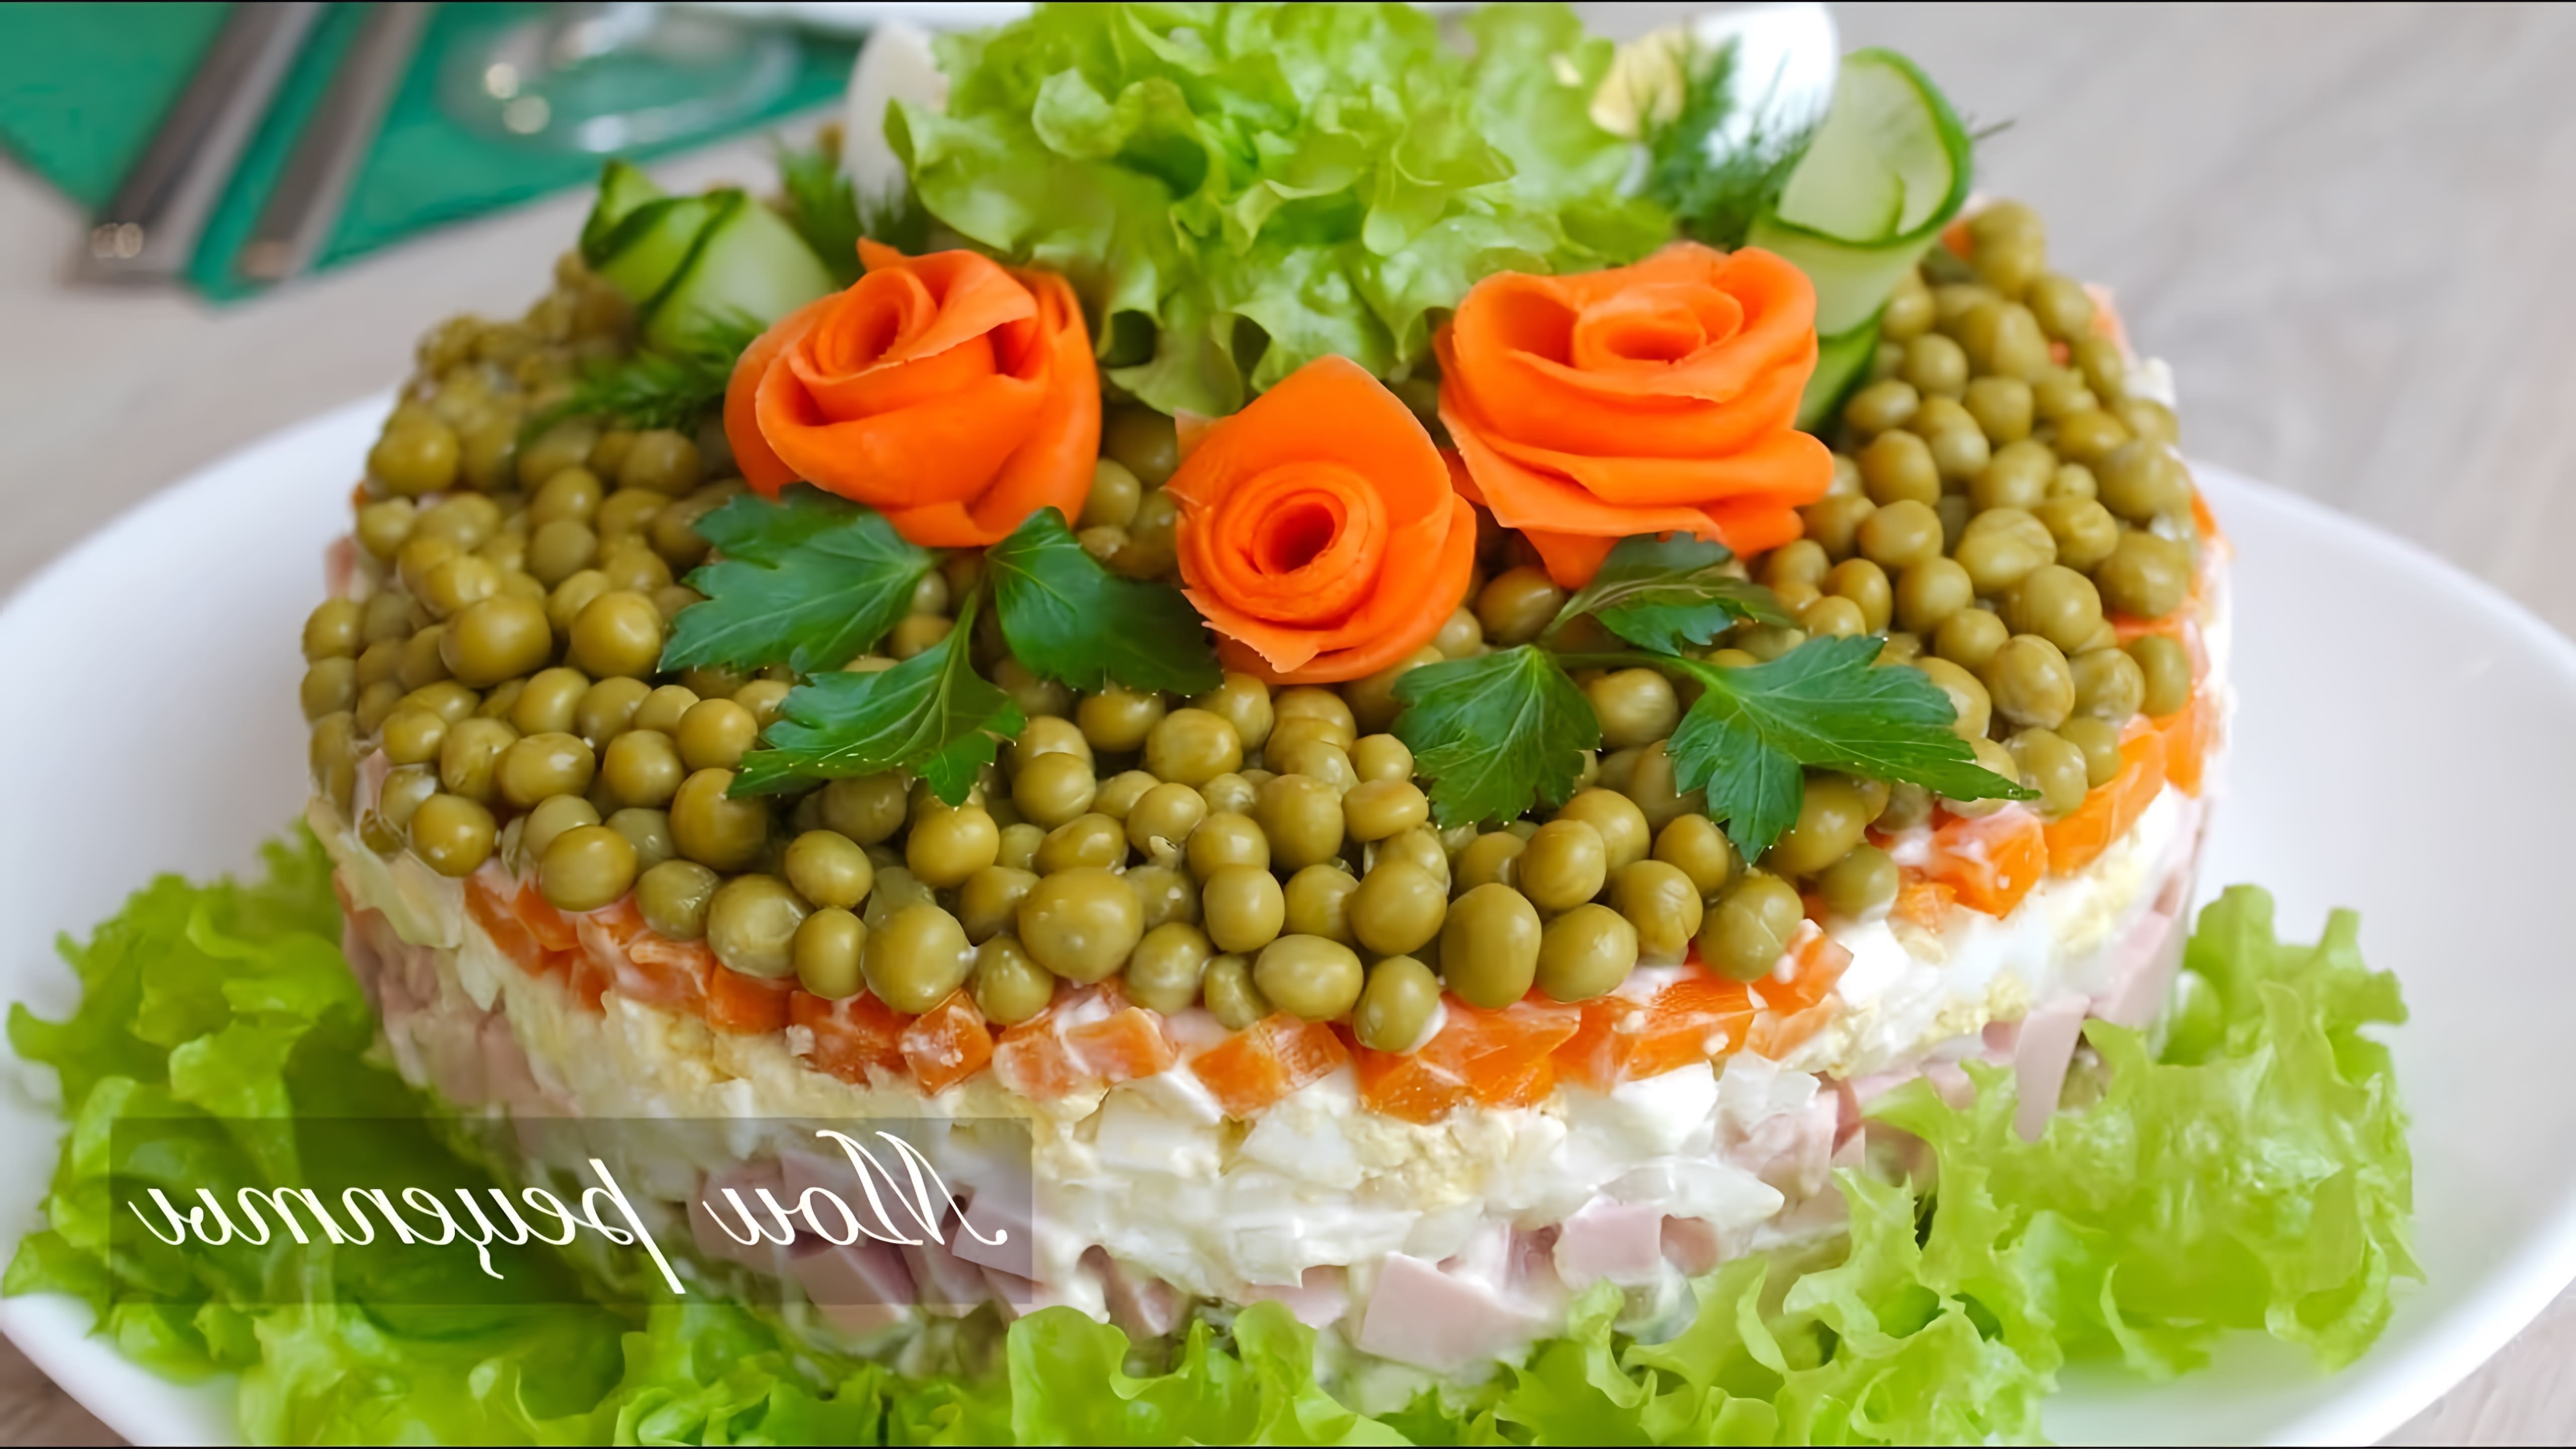 В этом видео демонстрируется, как красиво подать салат "Оливье" на праздничный стол